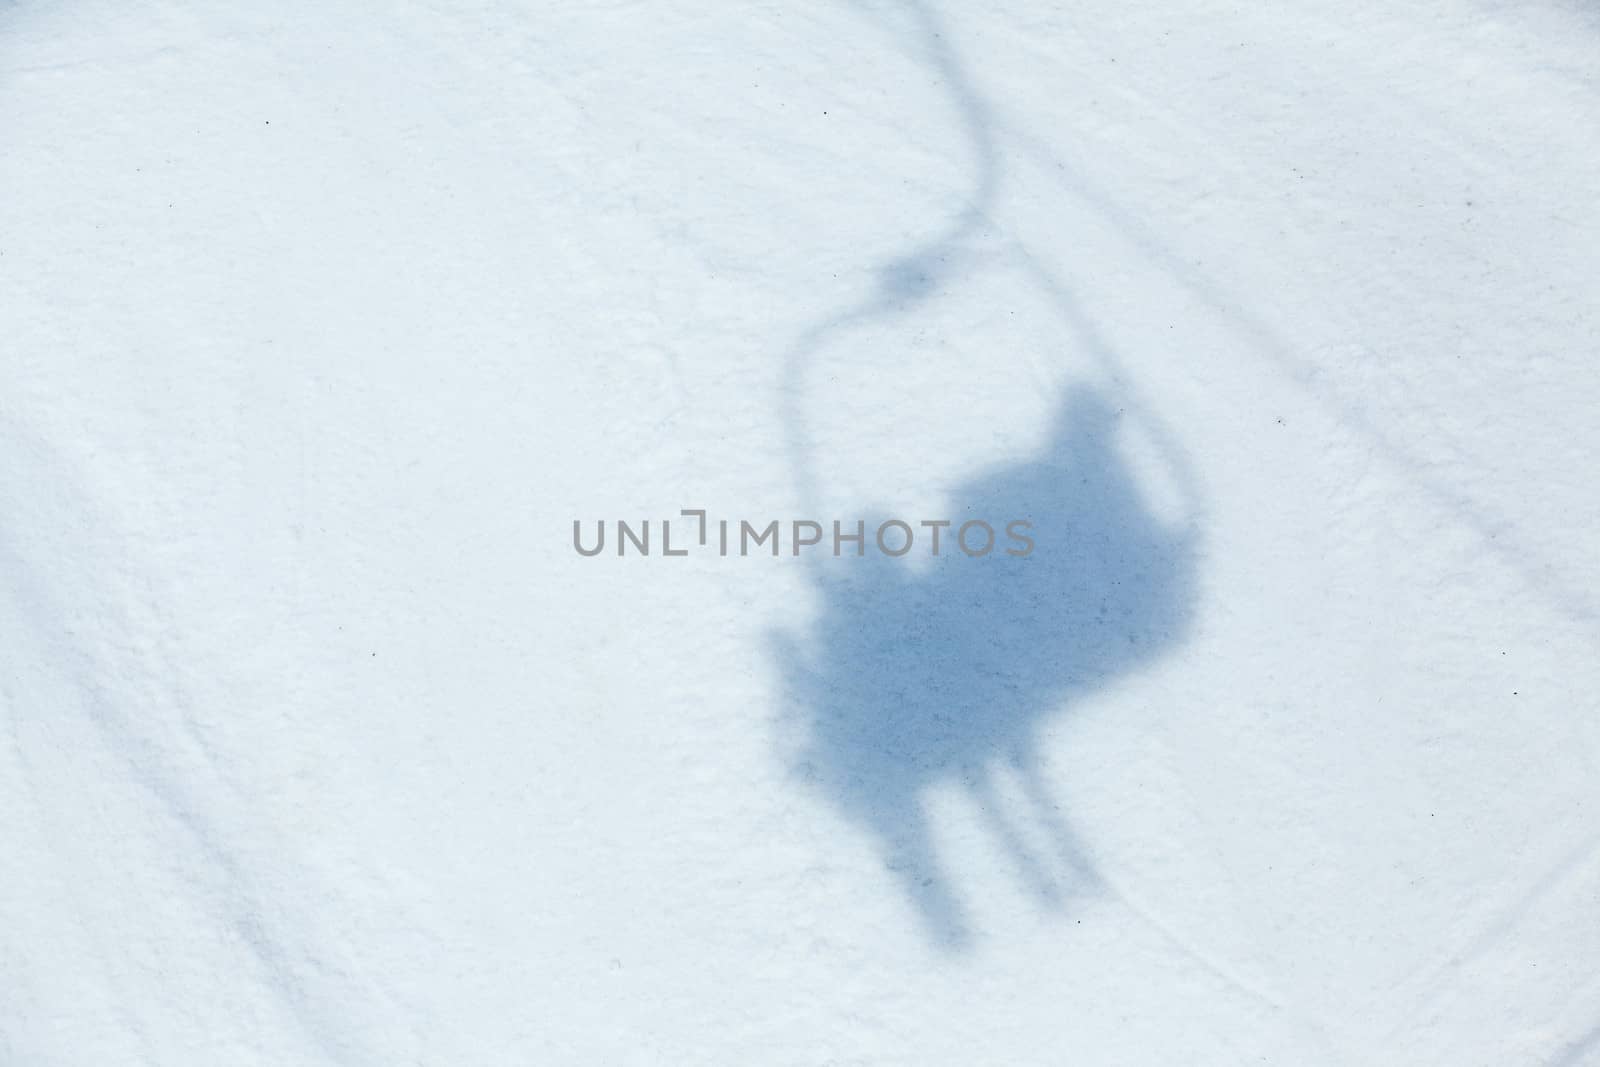 Ski lift shadow on the snow. Alps, Austria